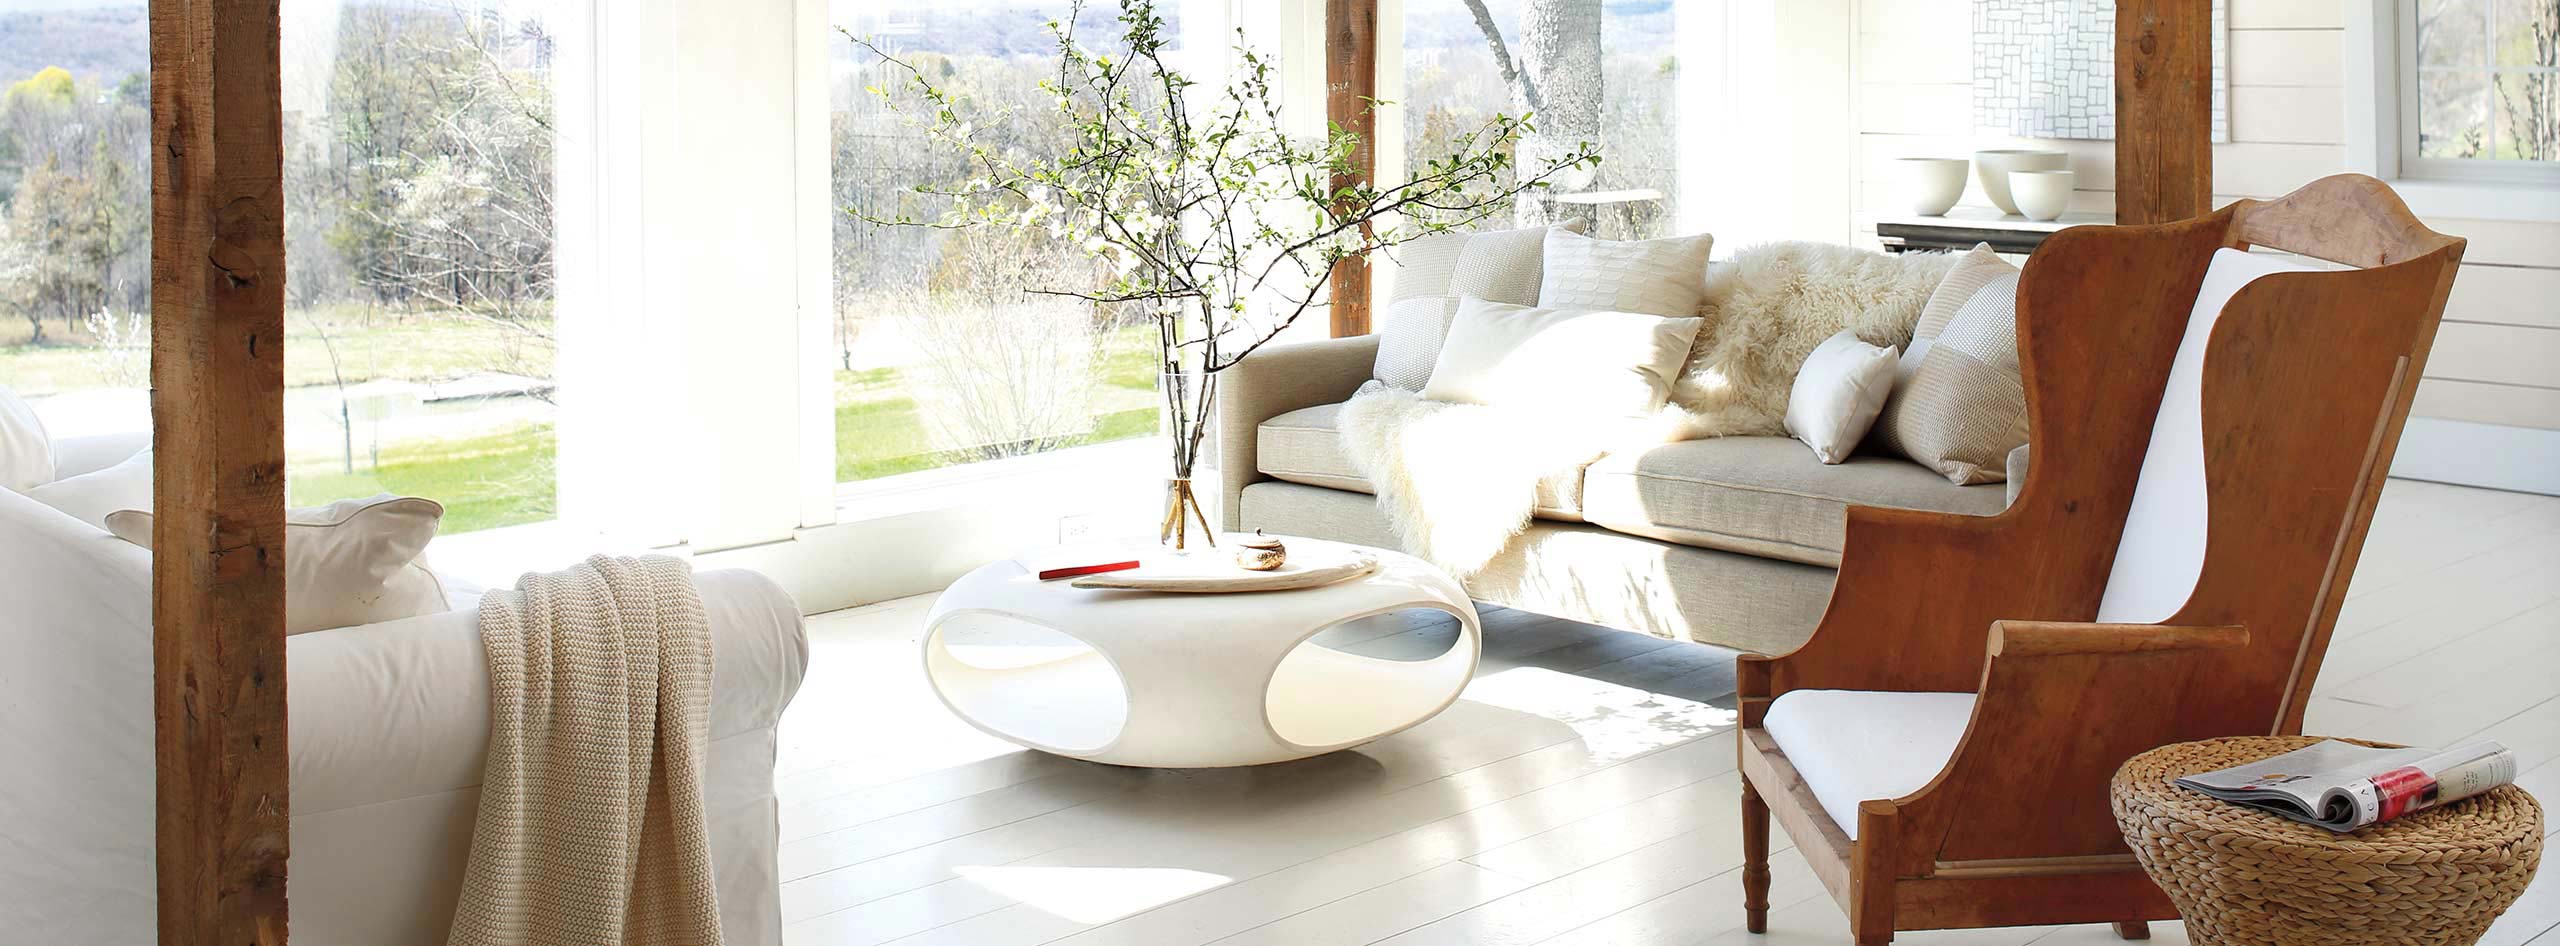 Un salon présentant des murs et un plancher peints en blanc, un fauteuil en bois, des canapés confortables et une table basse moderne.